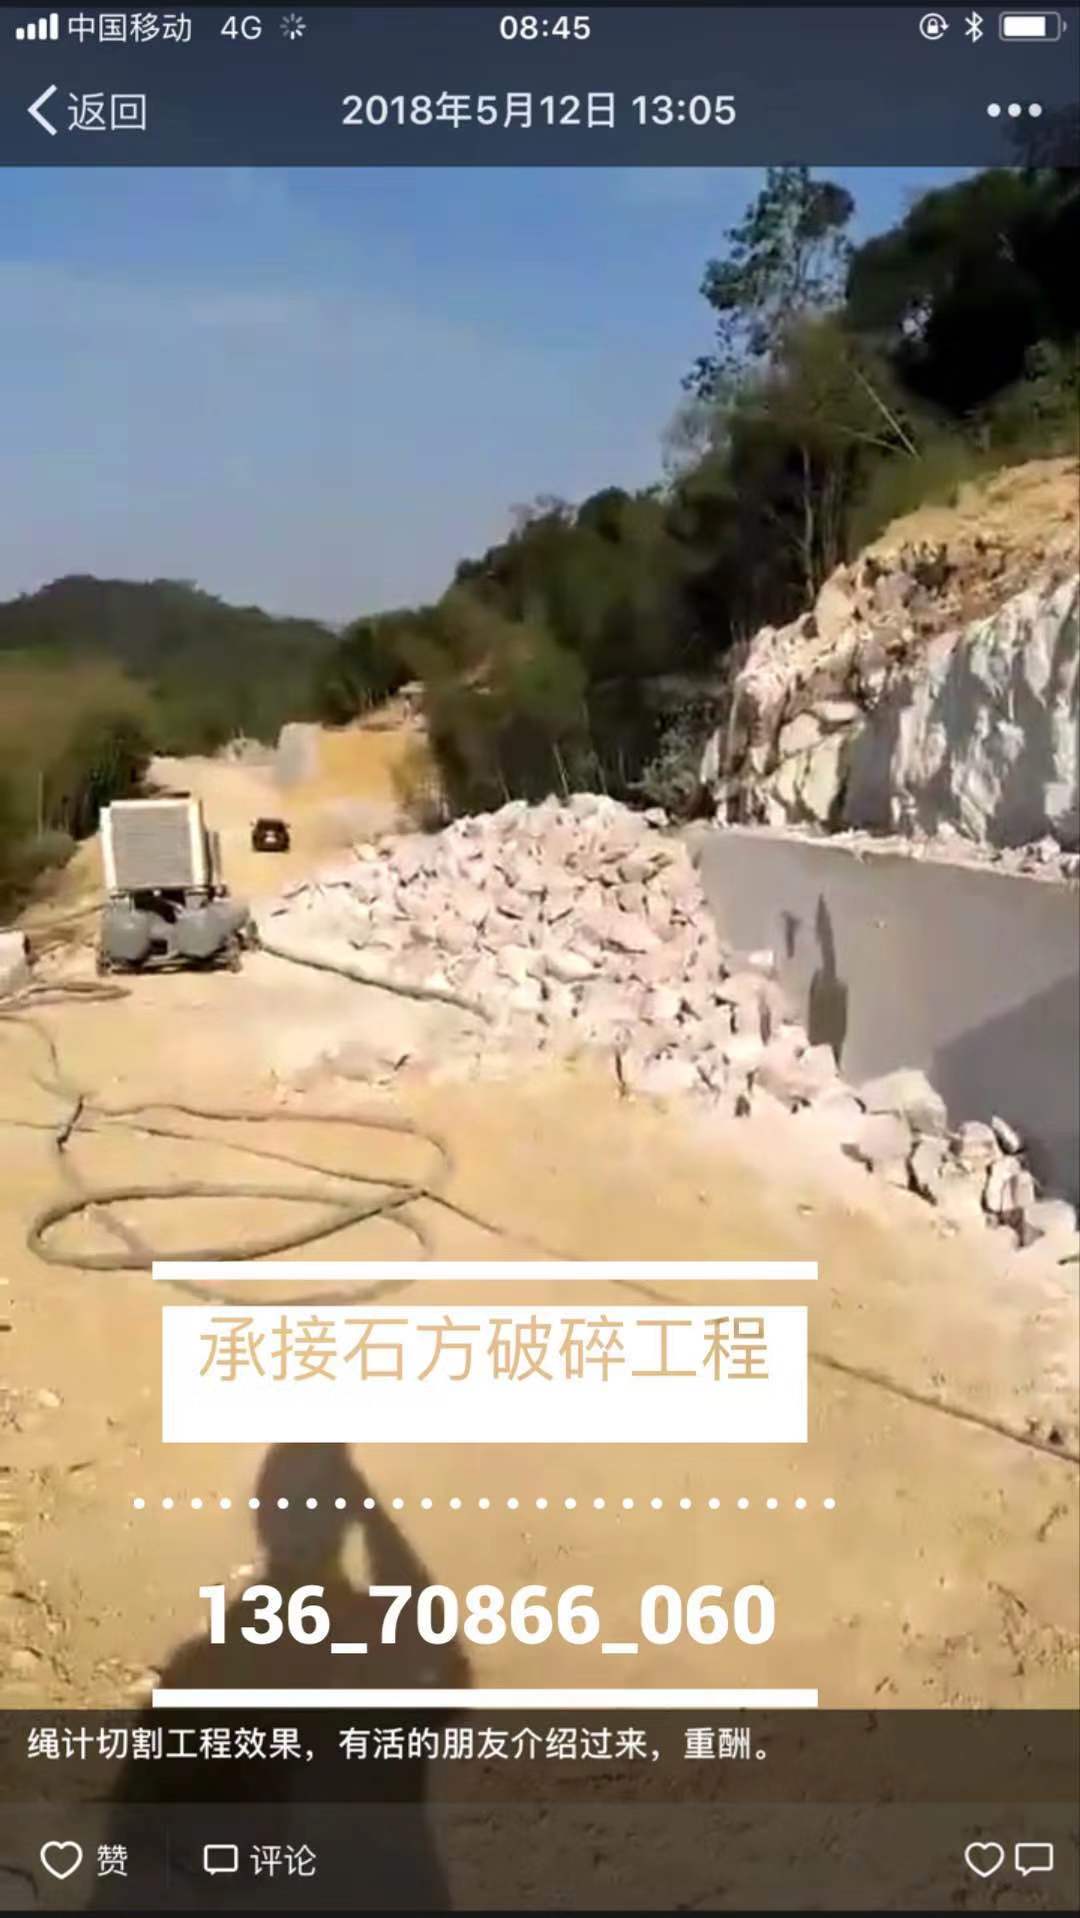 惠州市承接土石方工程承包批发